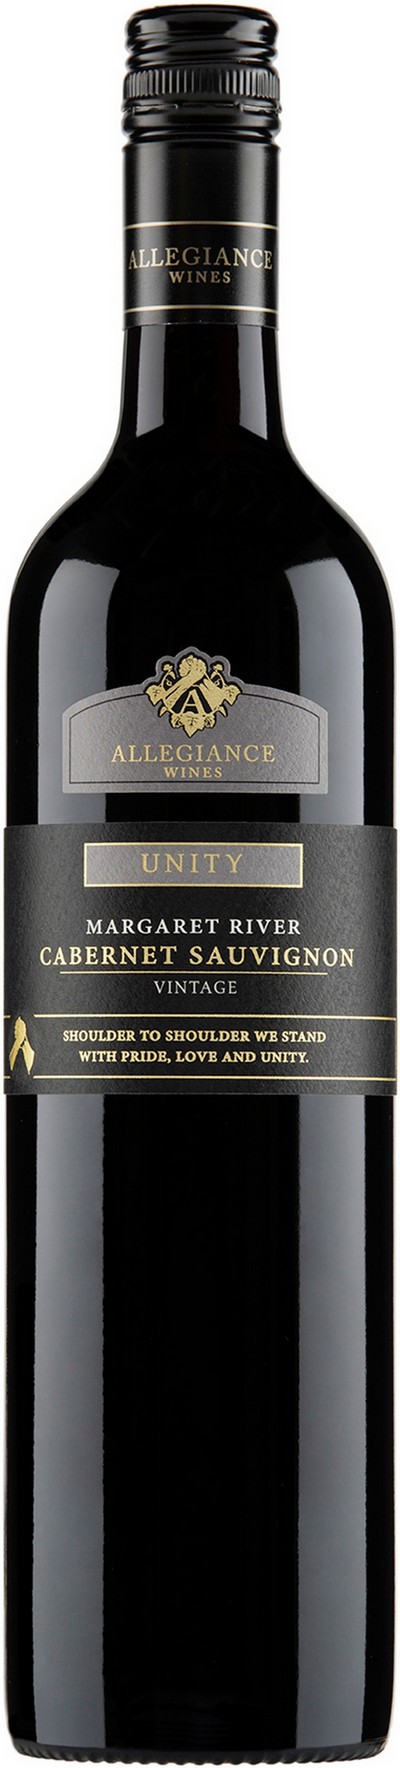 allegiance-wines-unity-margaret-river-cabernet-sauvignon-2020